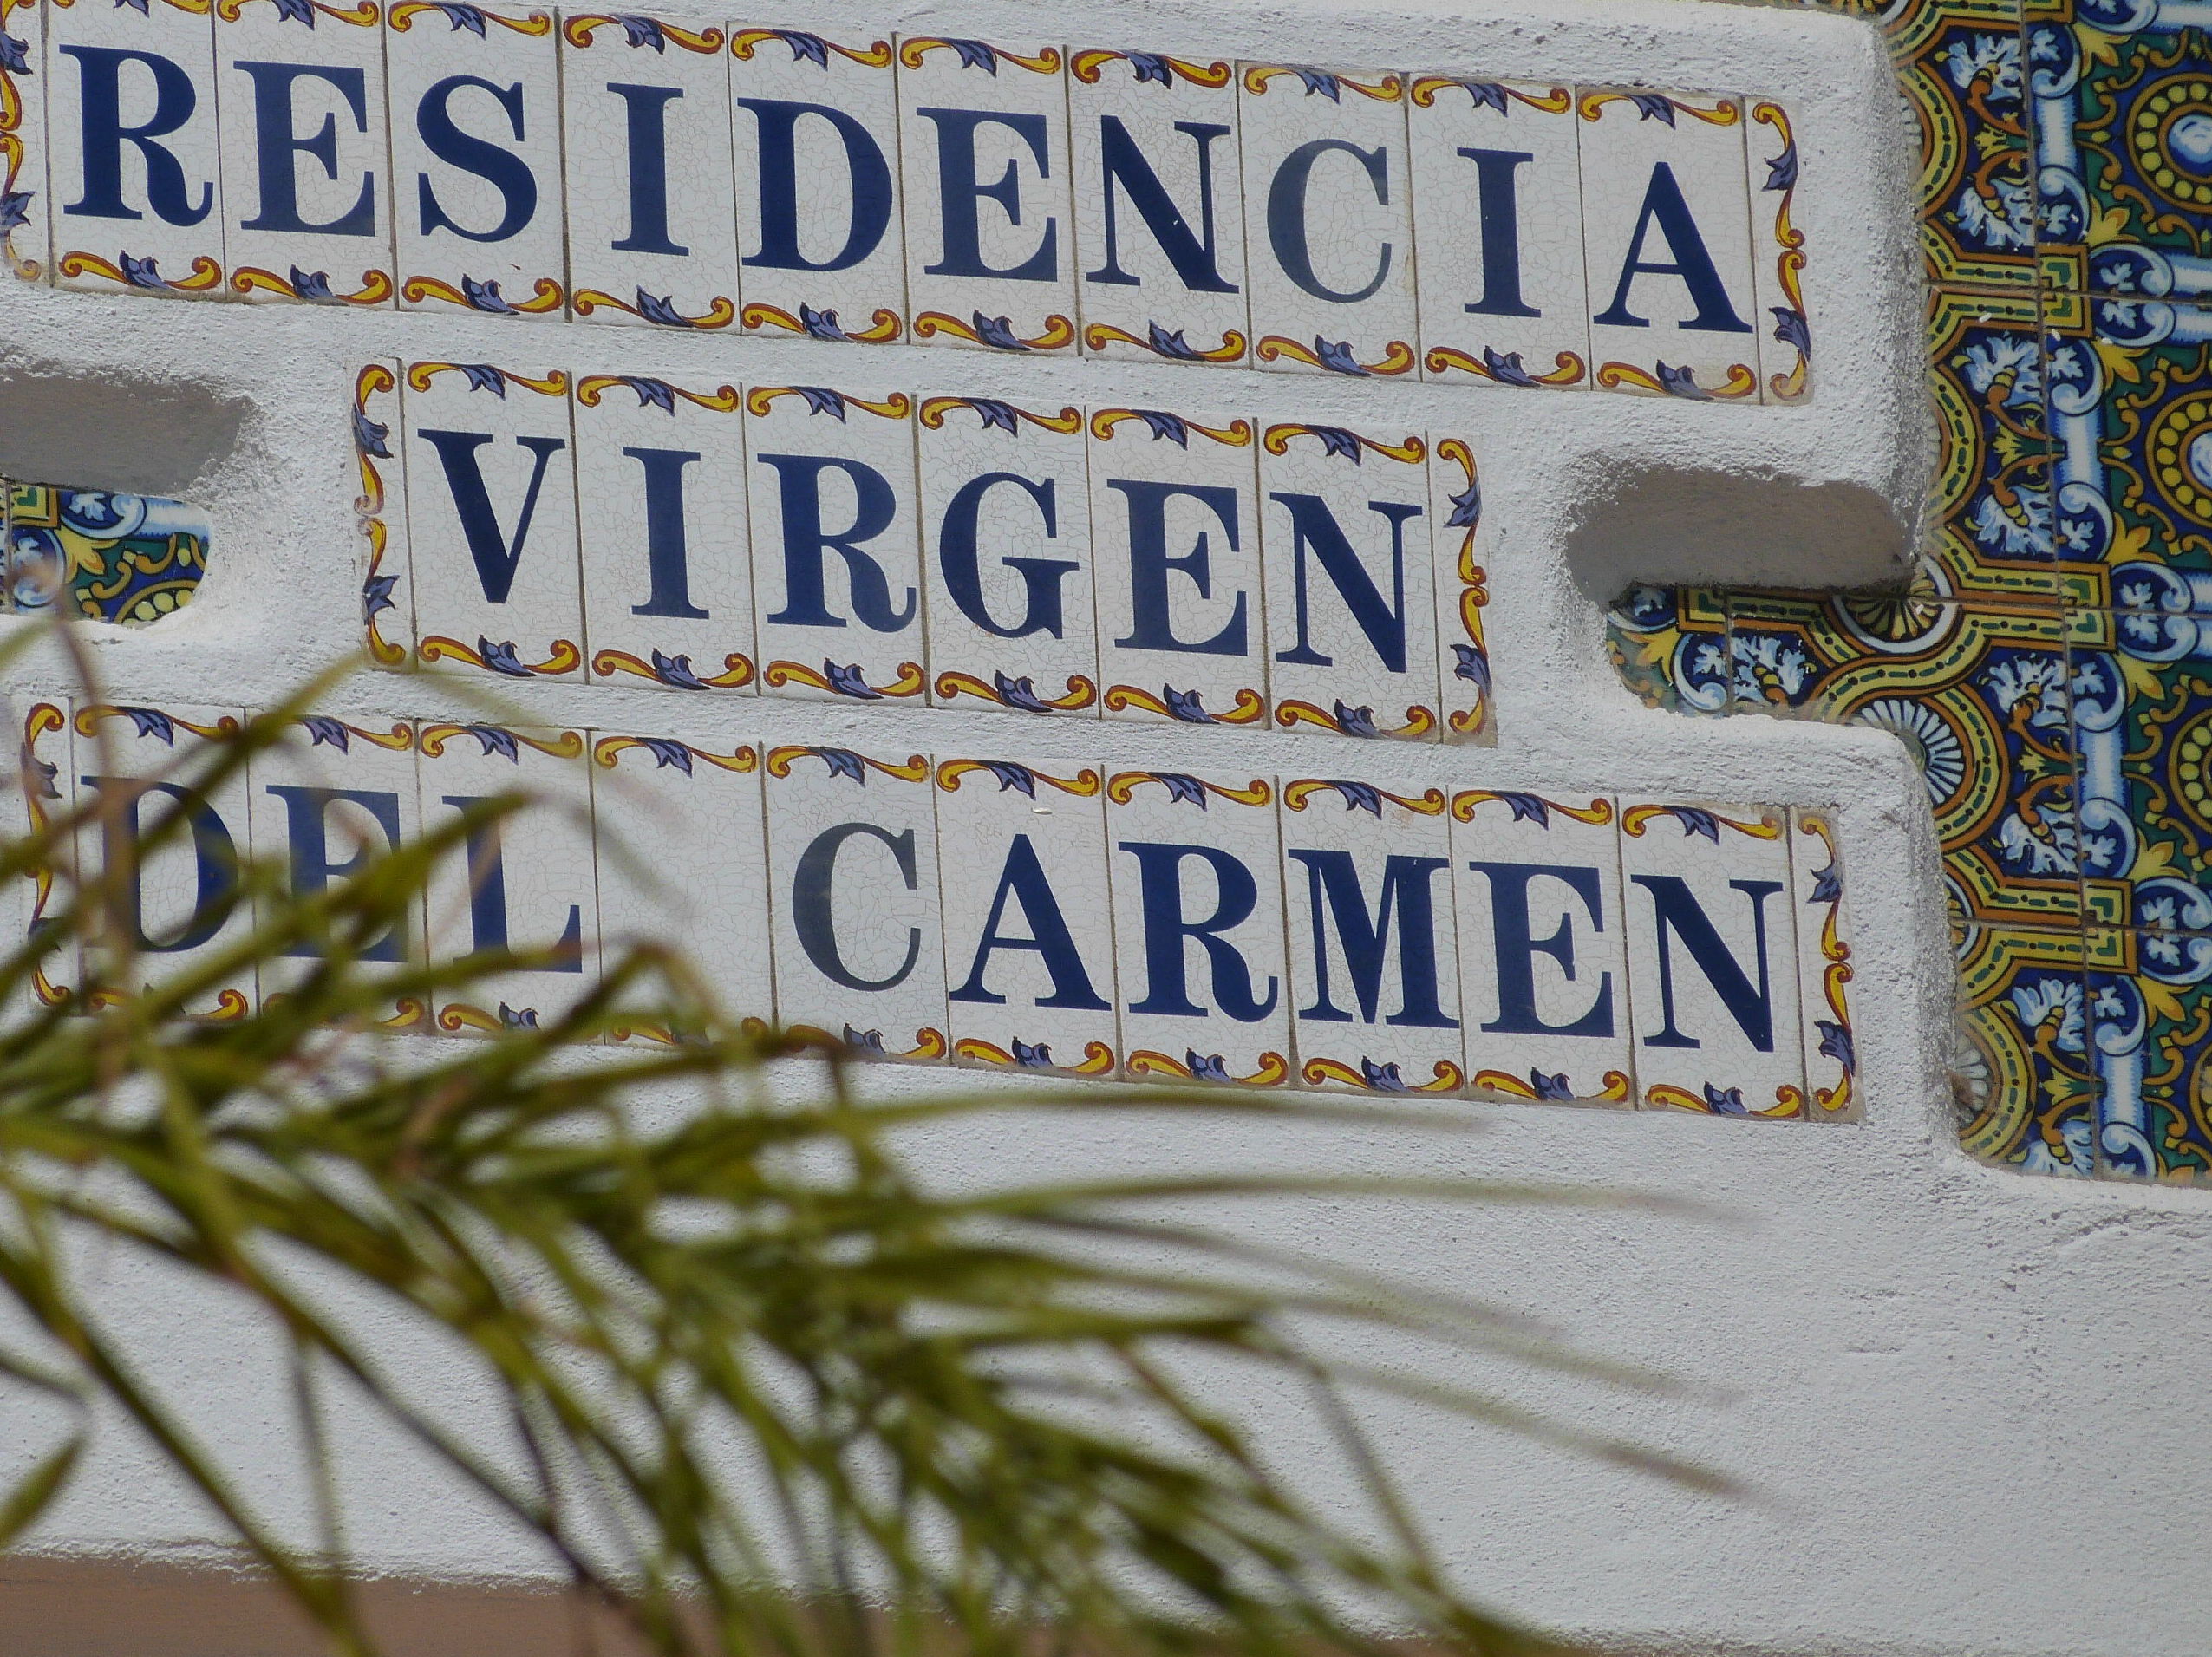 Residencia Virgen del Carmen 